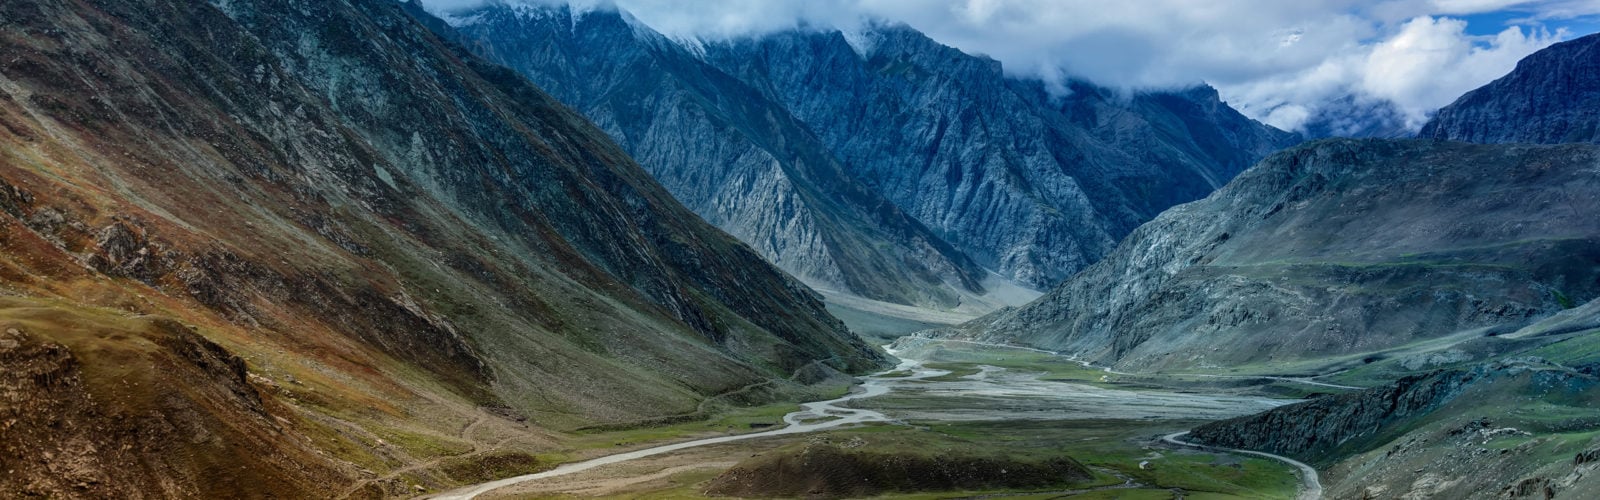 ladakh-landscape